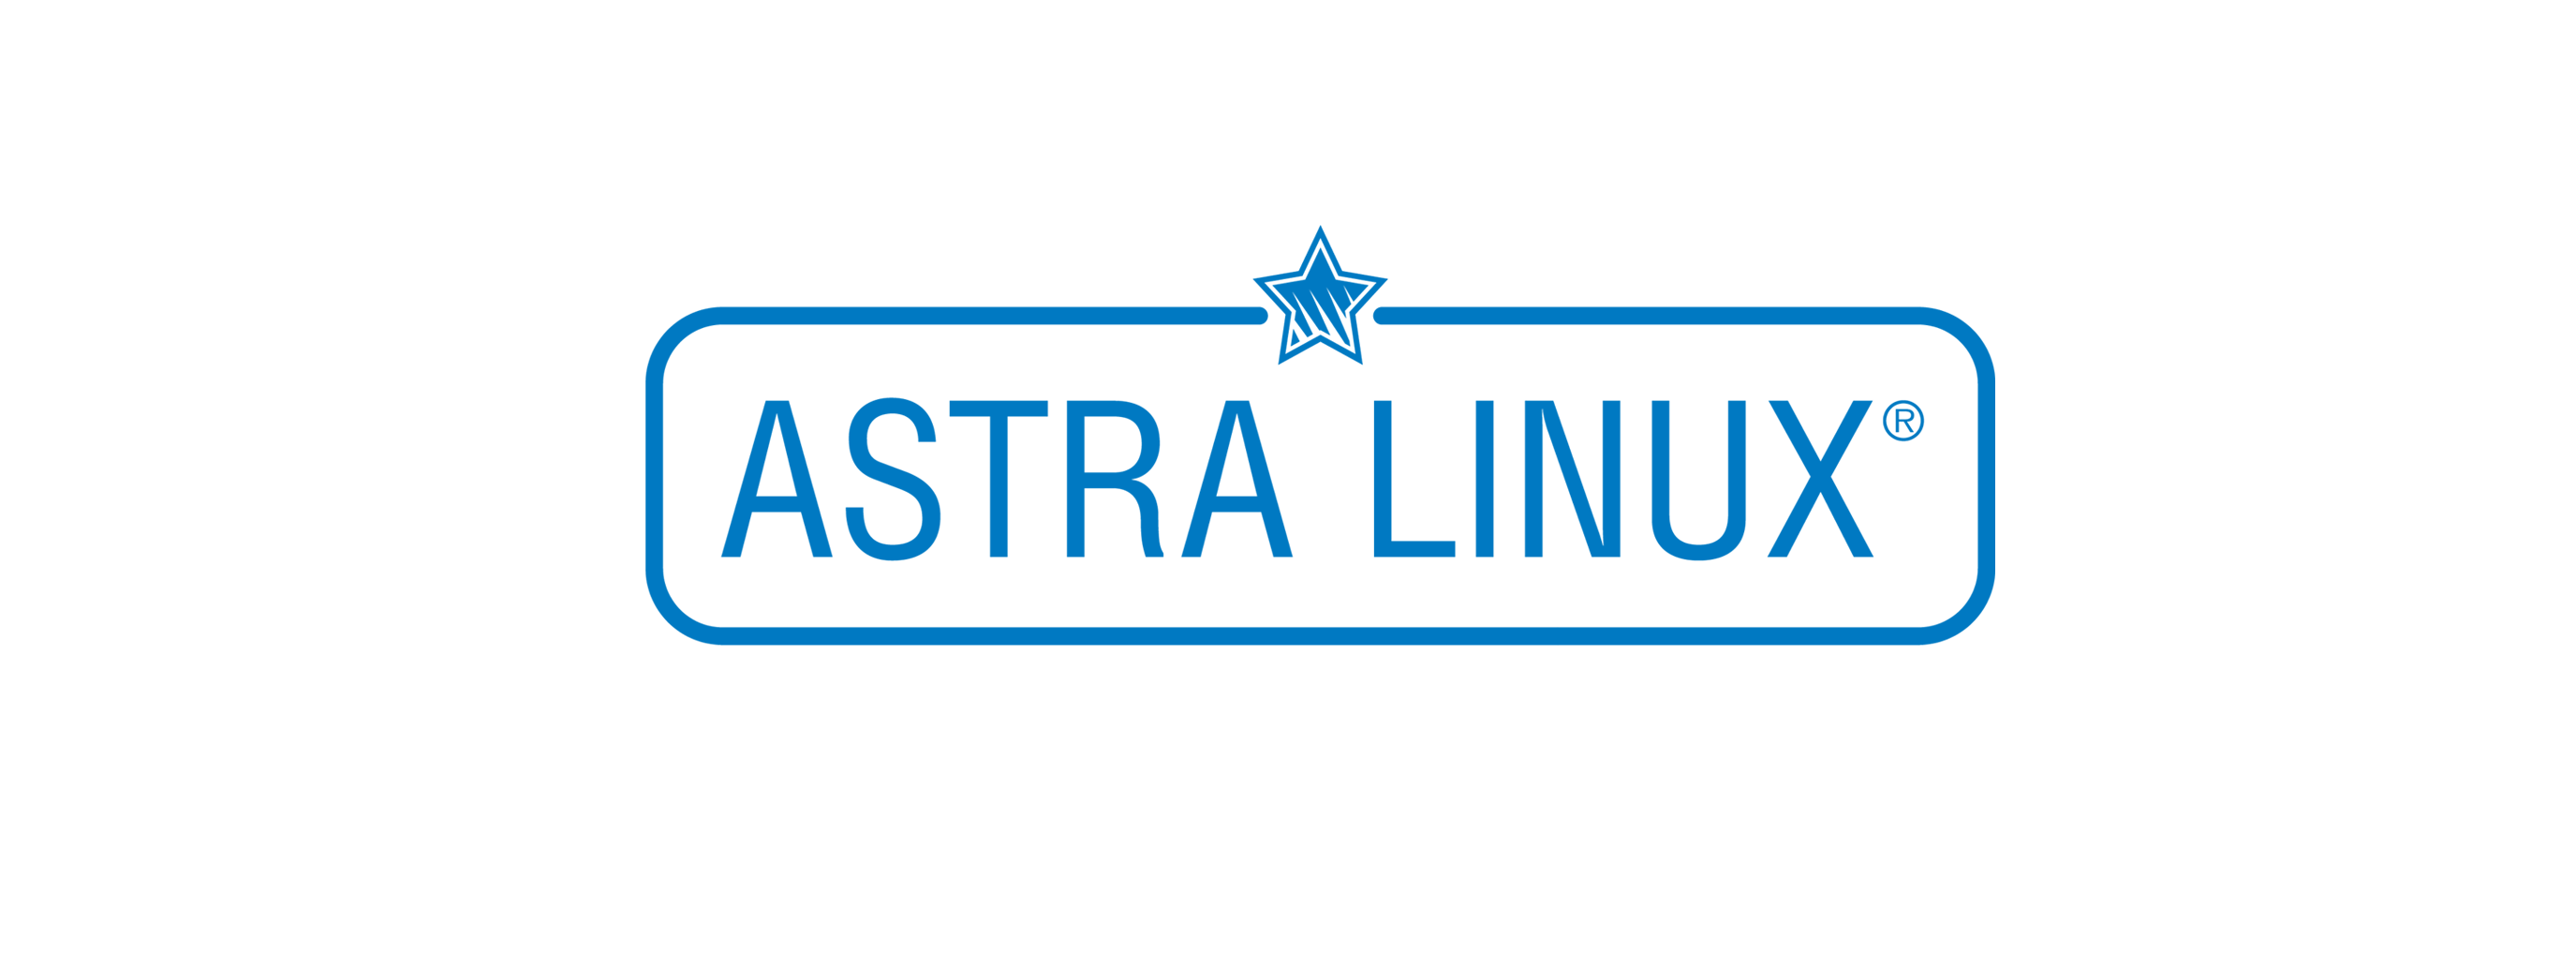 Лицензия РусБИТех Astra Linux Special Edition для аппаратных платформ Эльбрус-8С, Эльбрус-1С, РУСБ.10015-16 (ФСБ), Russian, на срок действия исключительного права базовая лицензия для сервера, BOX (OS2304ELB81BOX000SR01-SO36)